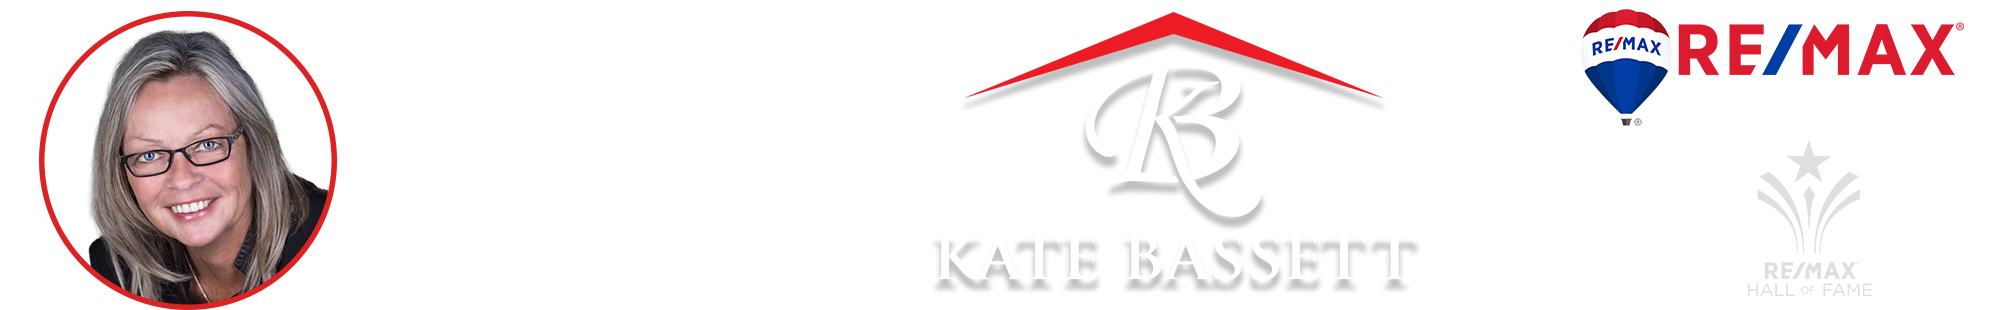 Kate Bassett Graphic Header